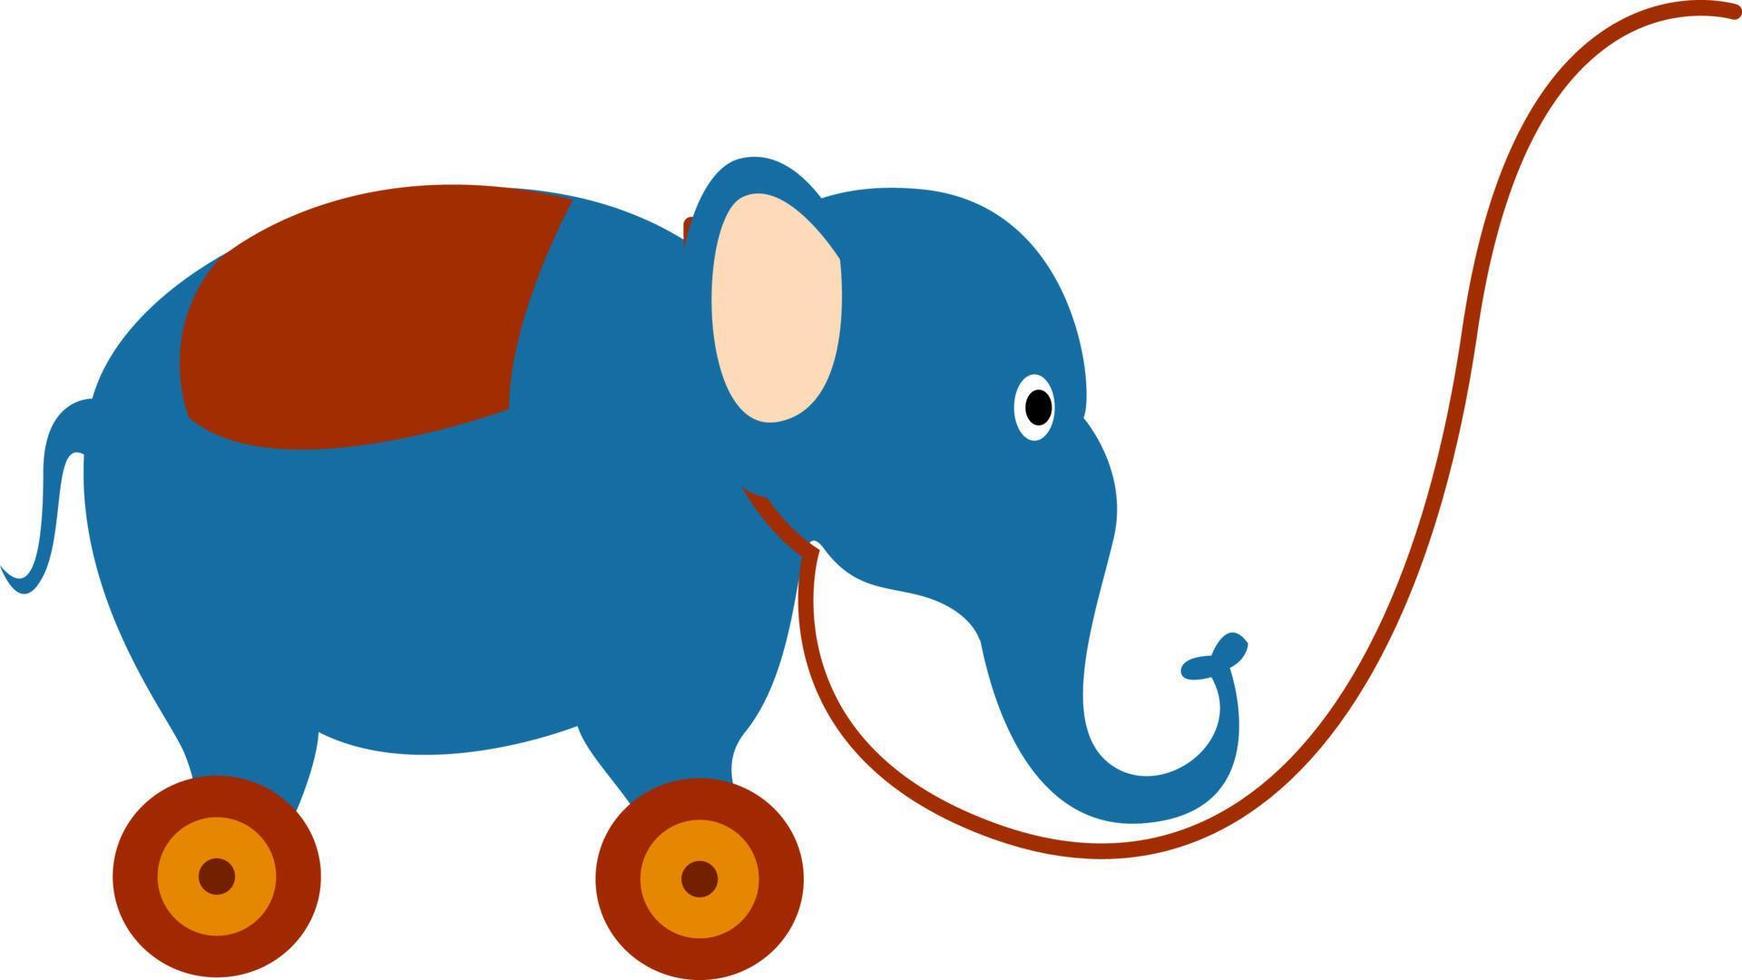 Juguete de elefante, ilustración, vector sobre fondo blanco.